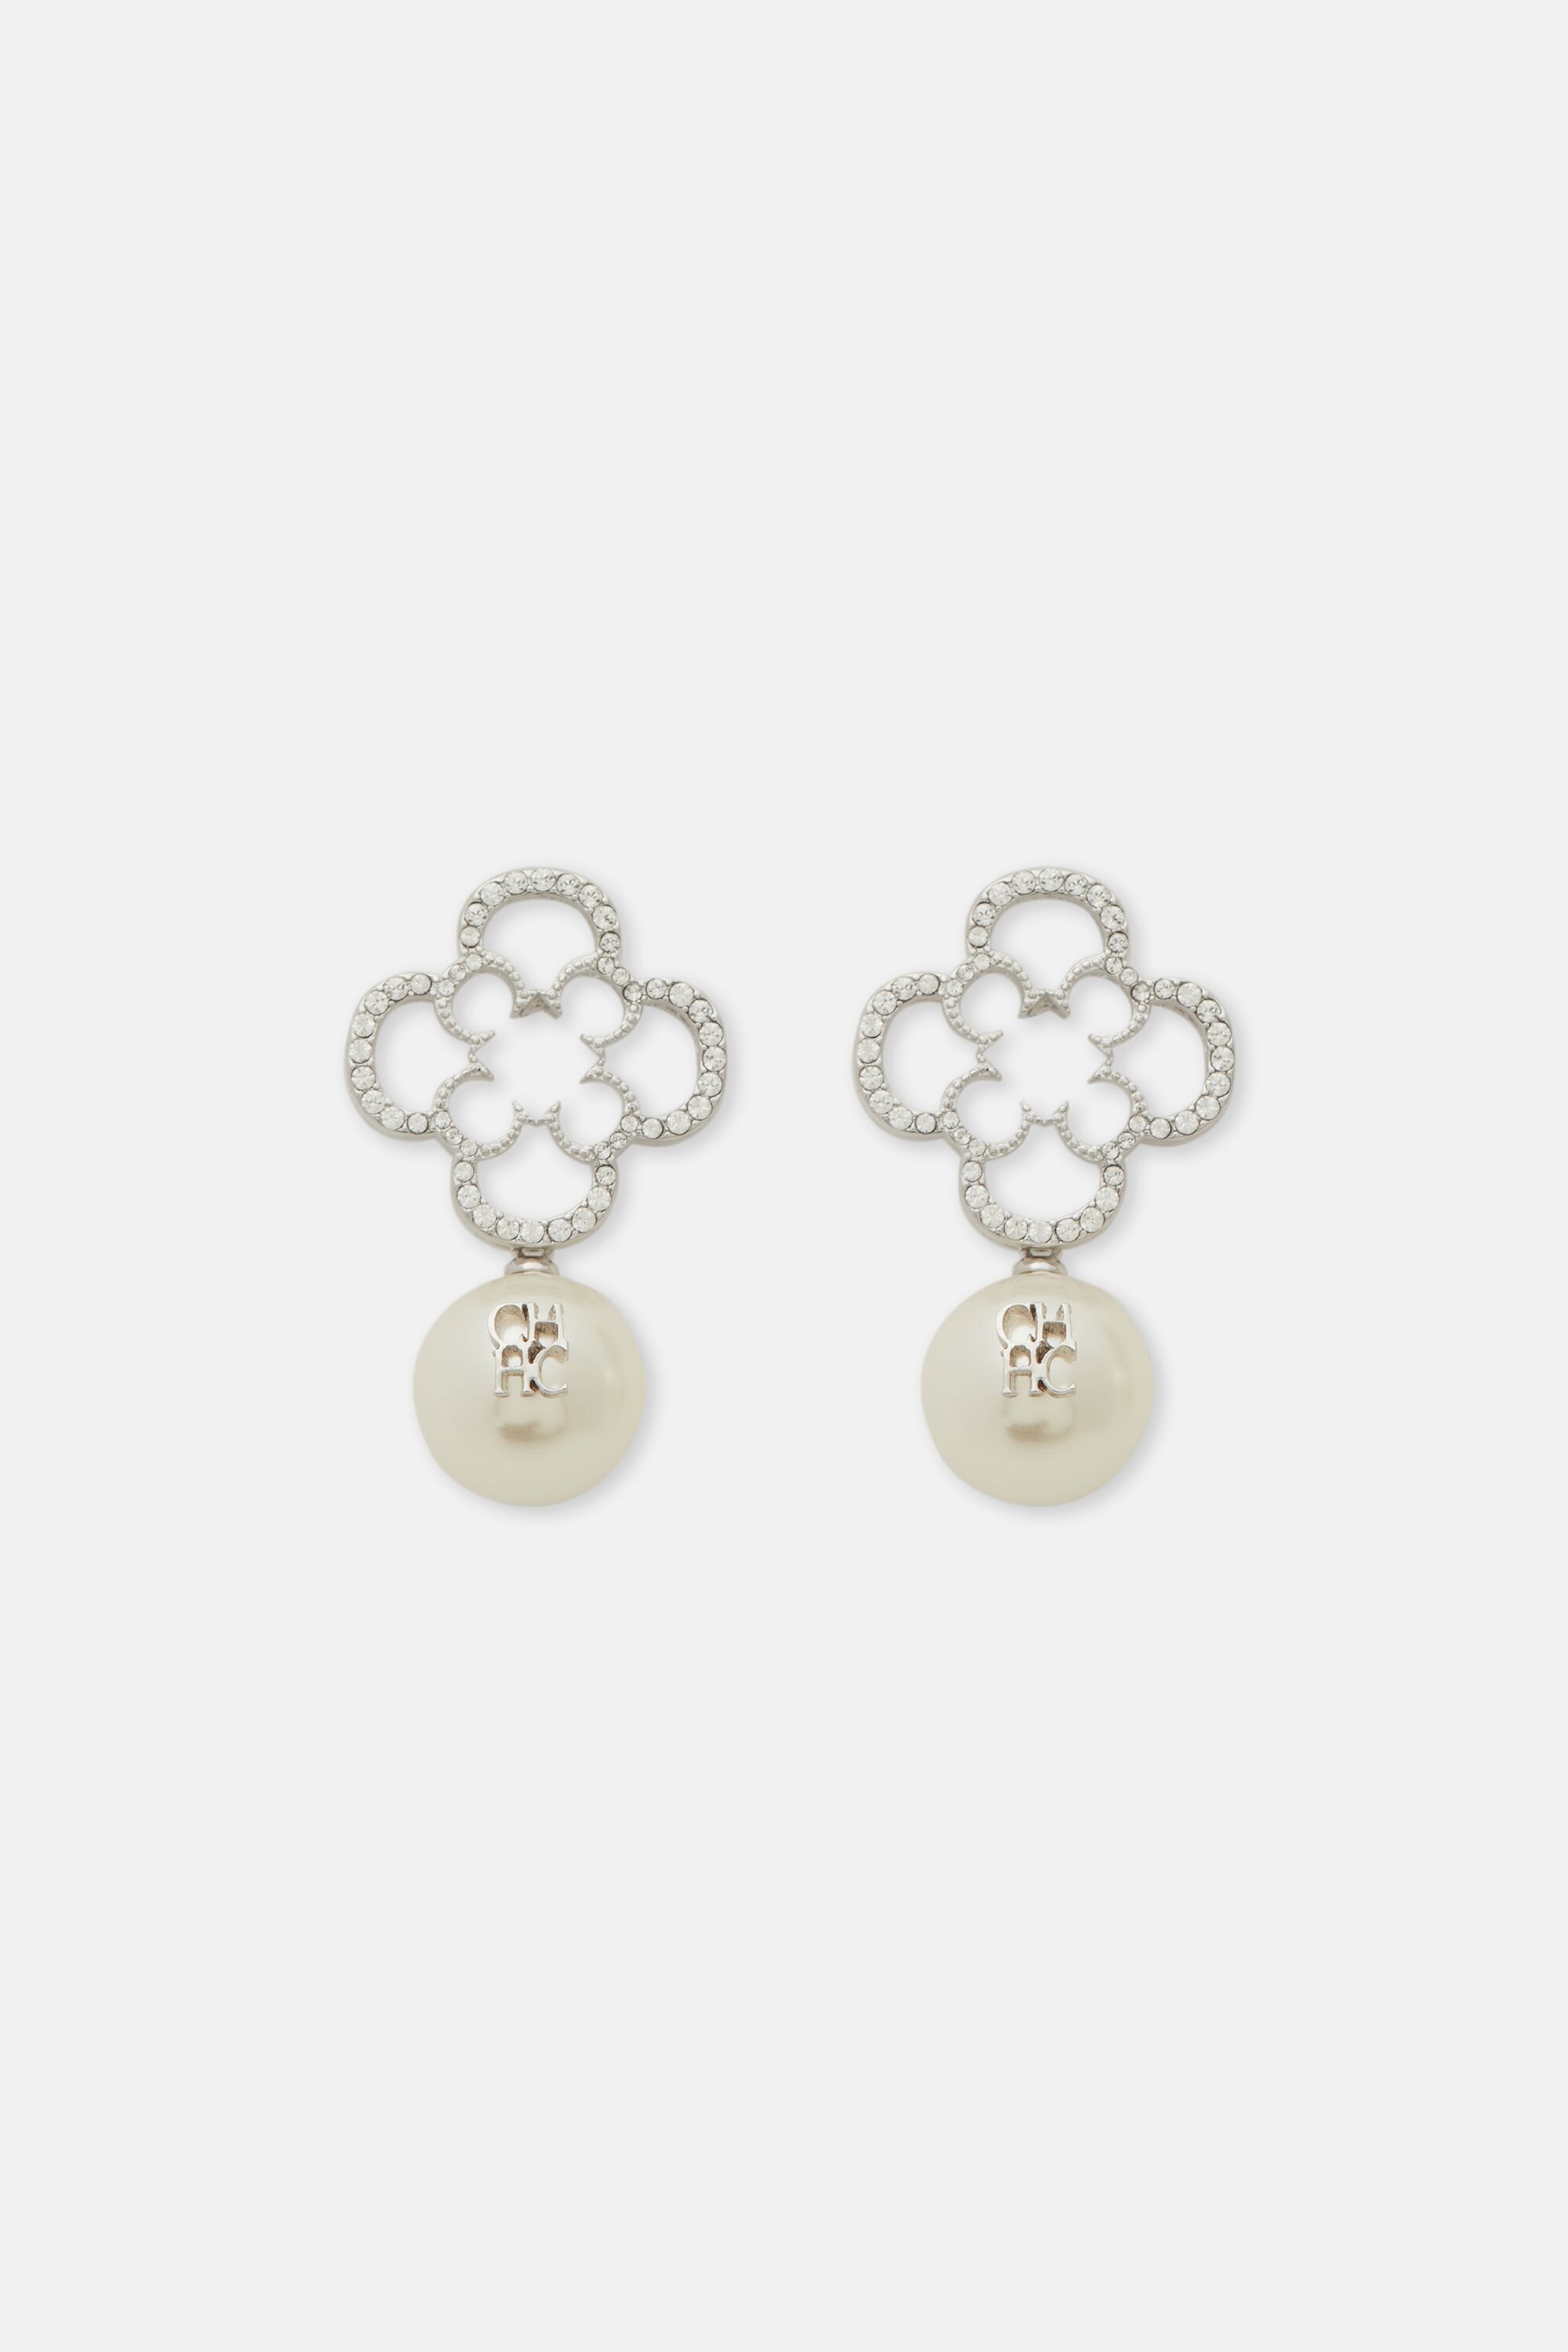 Rosetta Crystal Pearl earrings